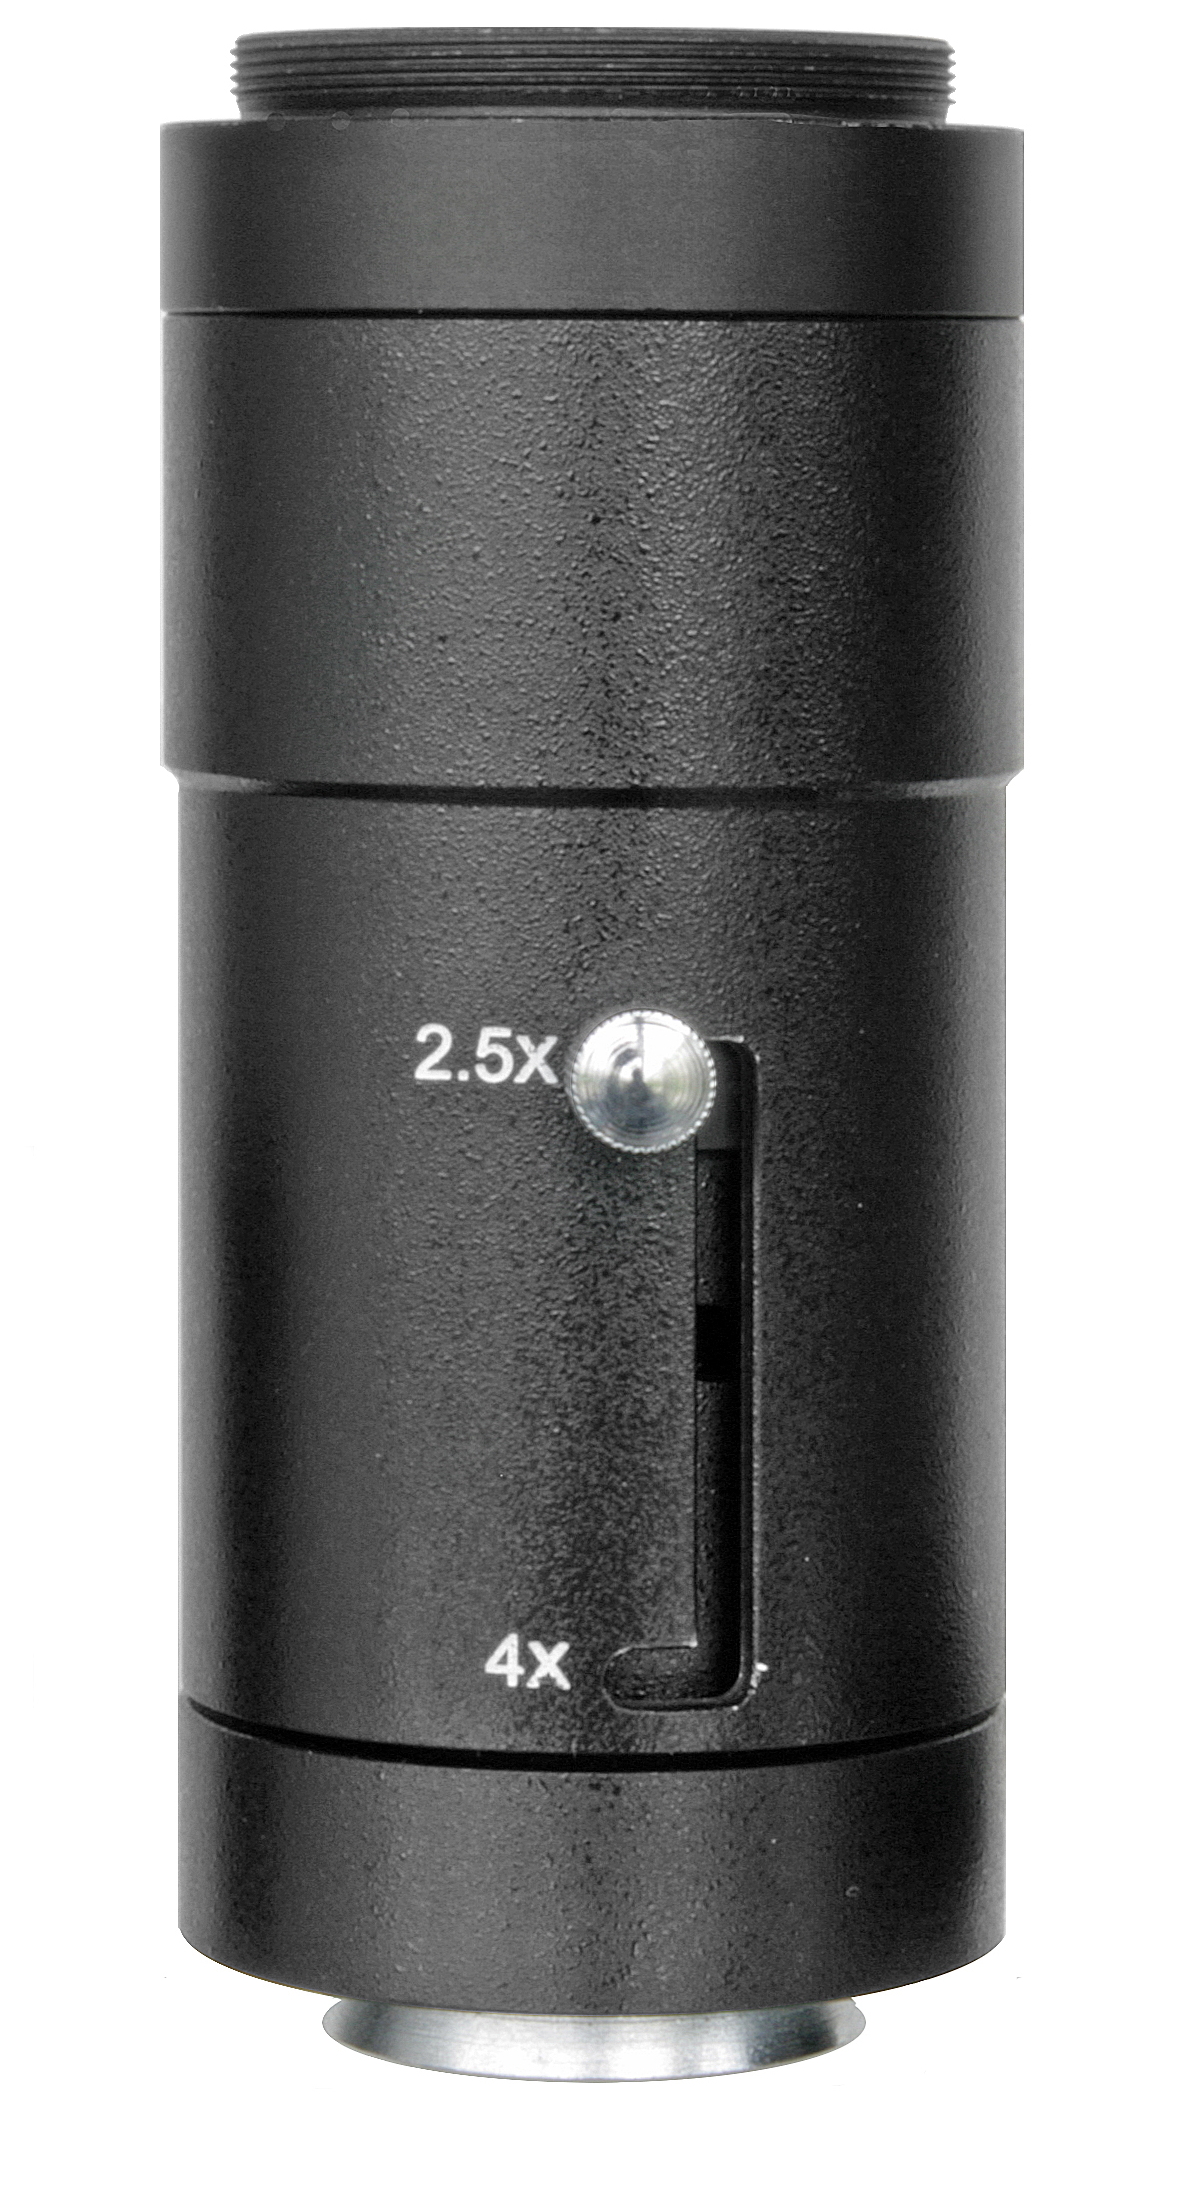 BRESSER SLR-Kameraadapter 2.5x und 4x